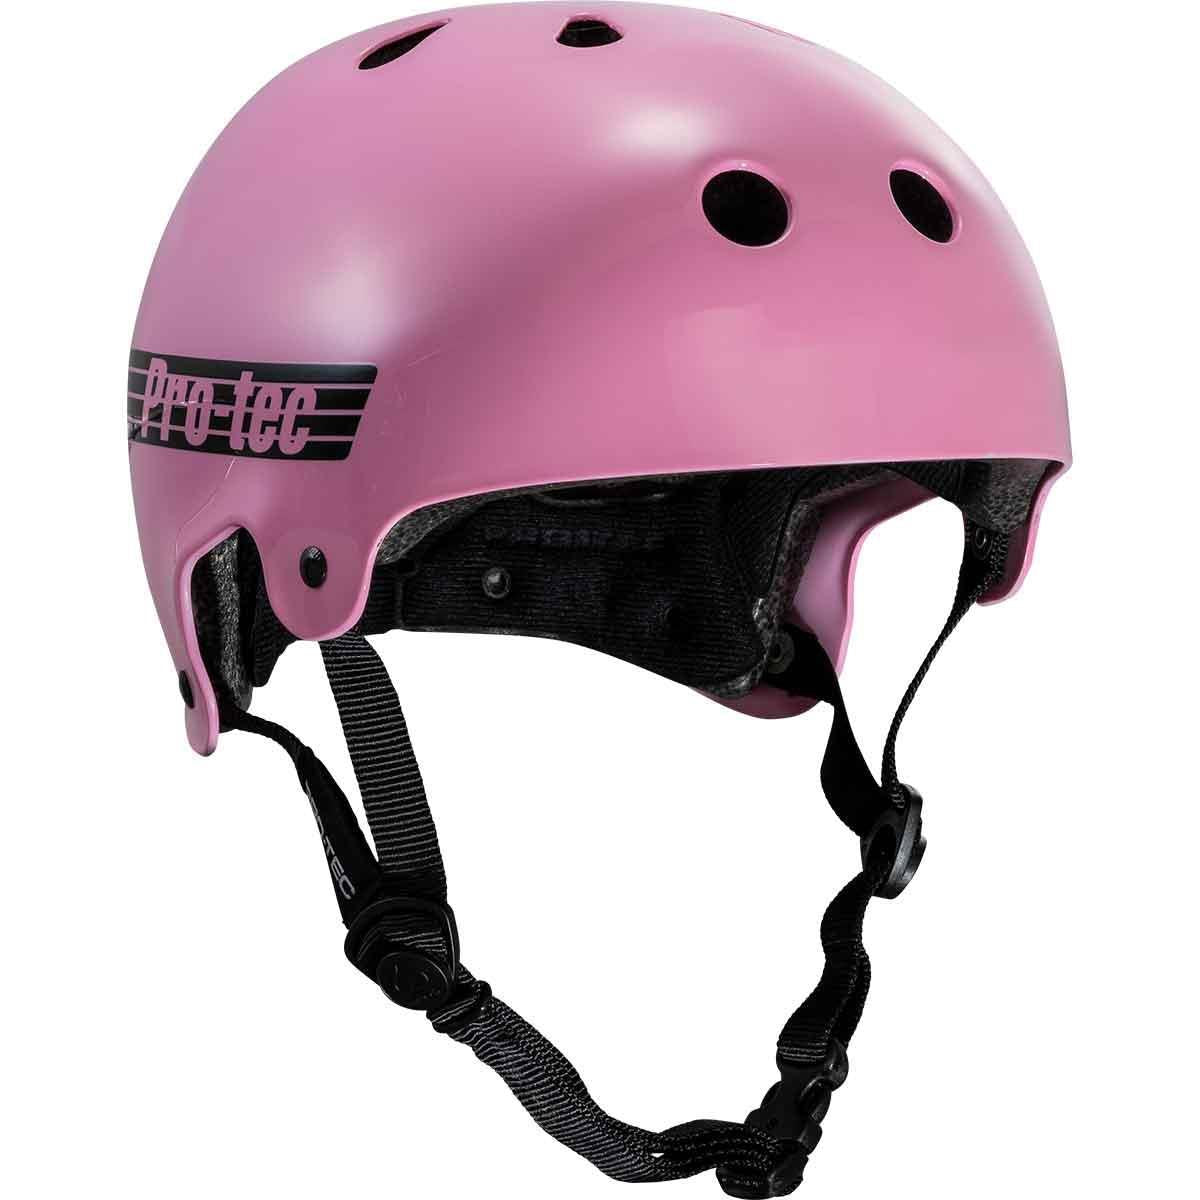 Pro-Tec Old School Helmet - Gloss Pink